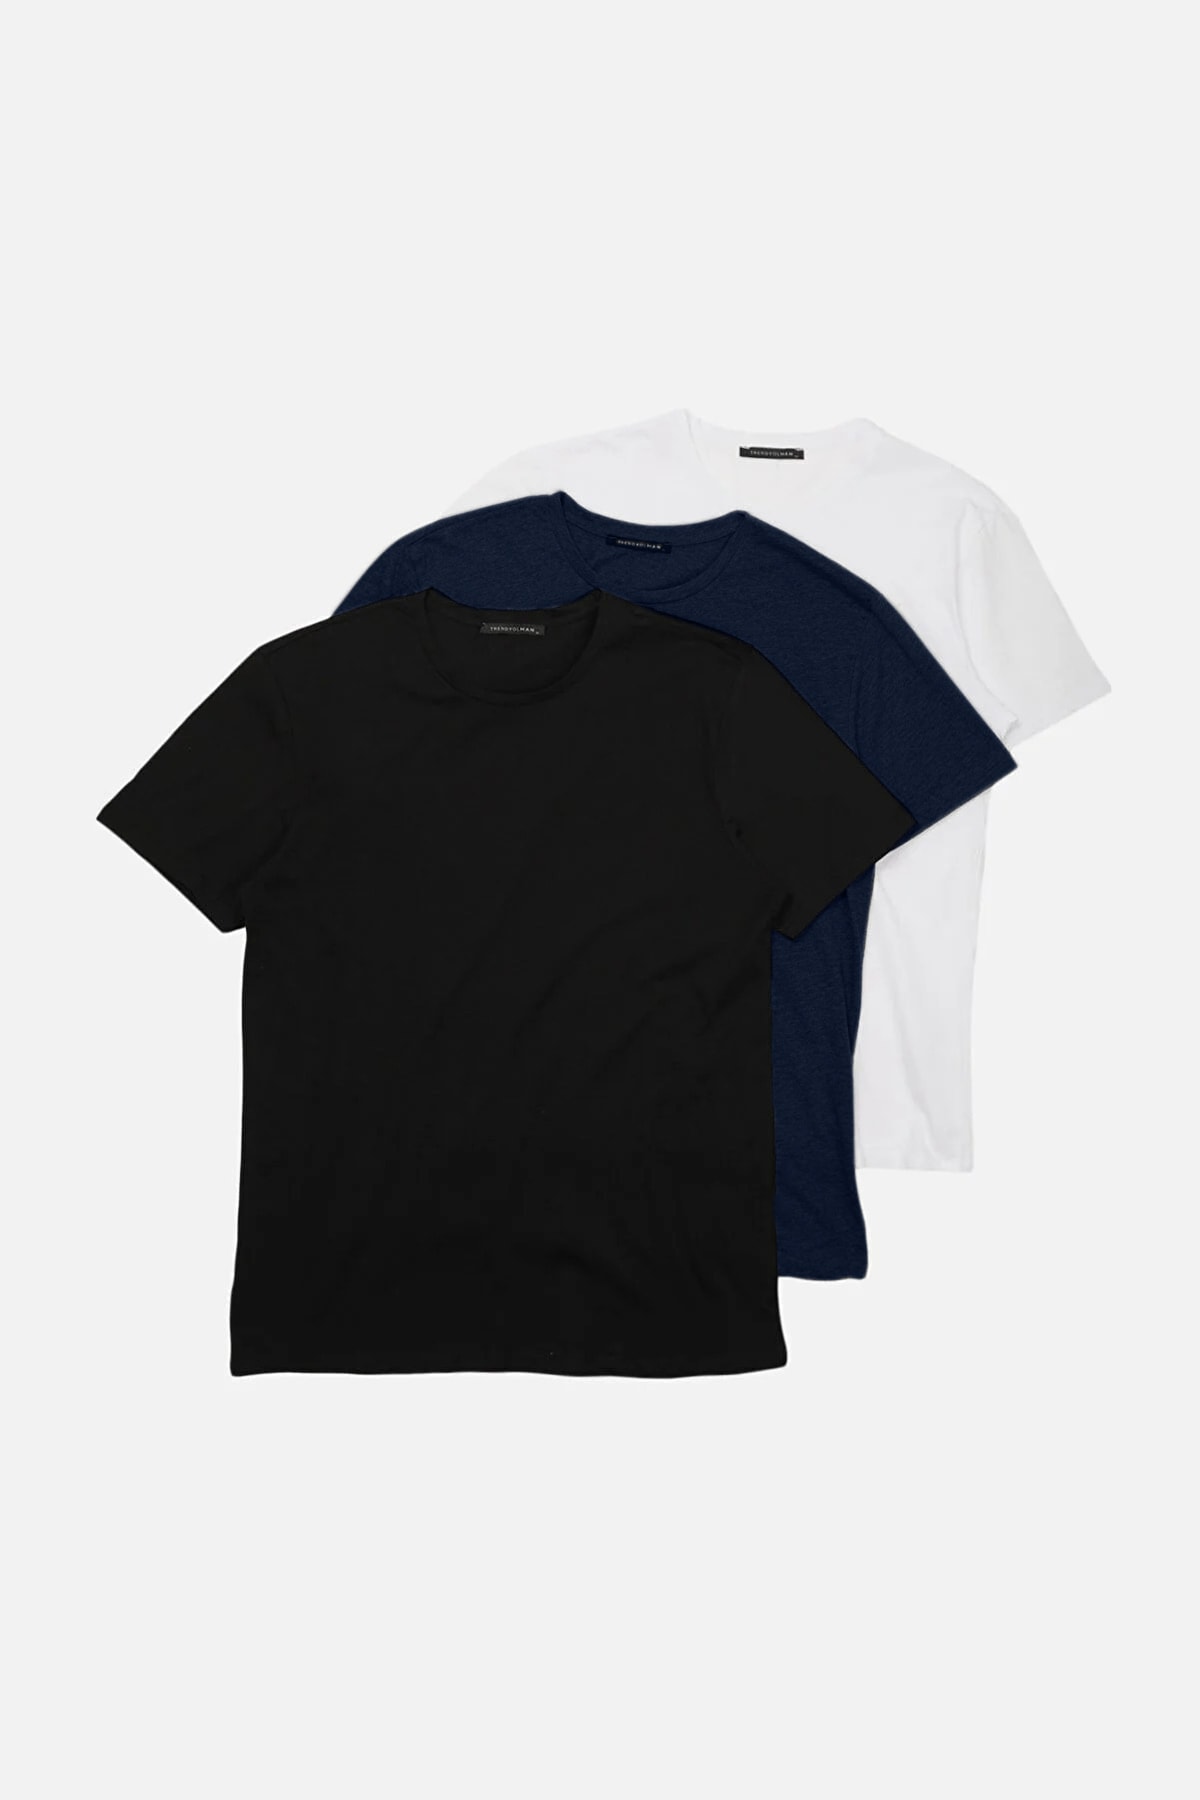 Trendyol Navy Blue-Black-White Men's Basic Slim 100% Cotton 3-Pack T-Shirt